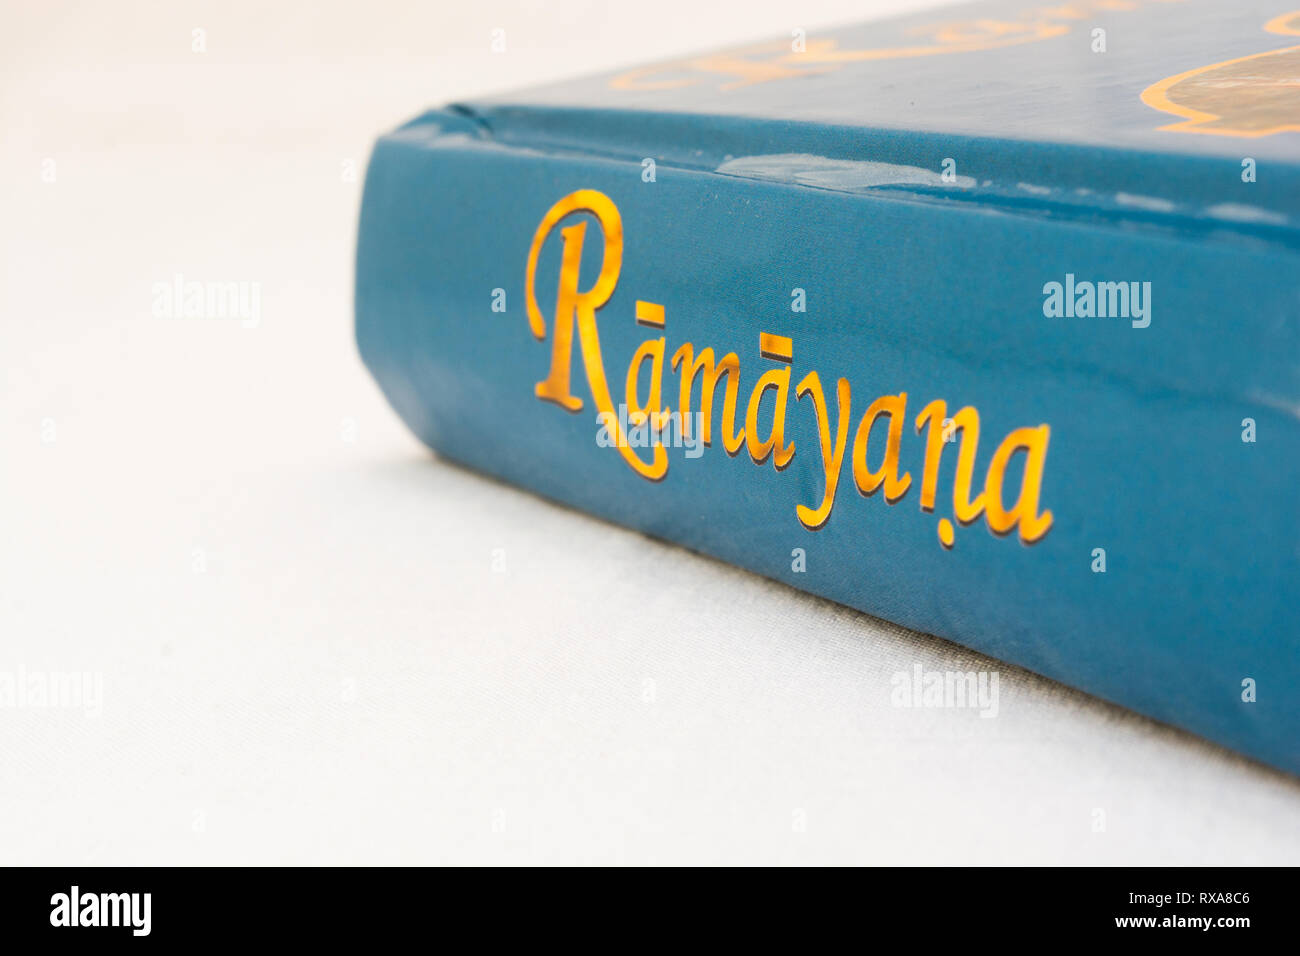 Maski,Karnataka,India - March 07,2019 : The Epic Hindu Ramayana book on isolated background Stock Photo